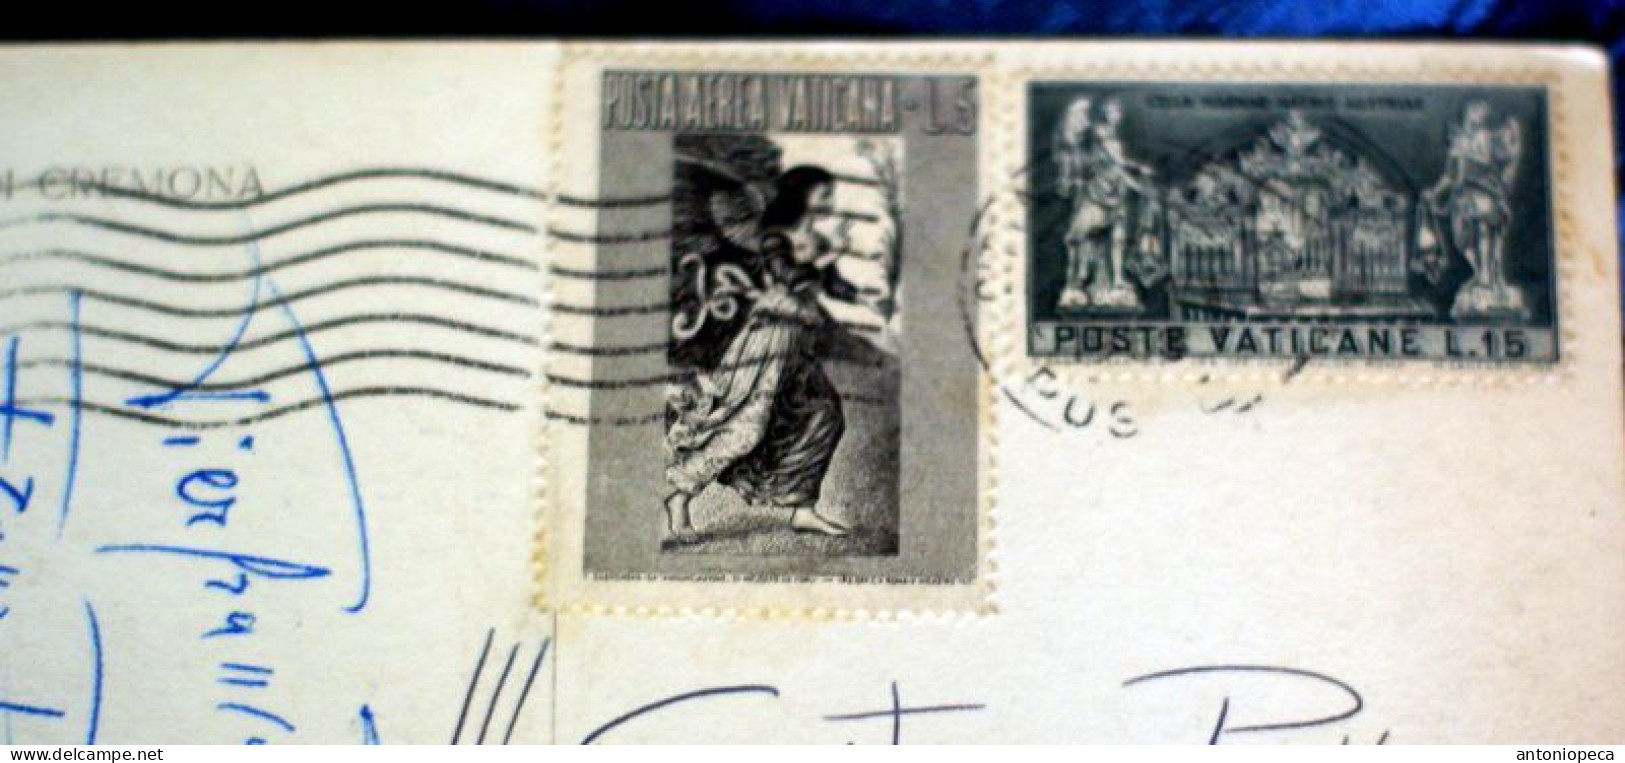 VATICANO 1958, POSTA AEREA LIRE 5, E MAGNA MATER AUSTRIA LIRE 15 SU CARTOLINA VIAGGIATA - Cartas & Documentos